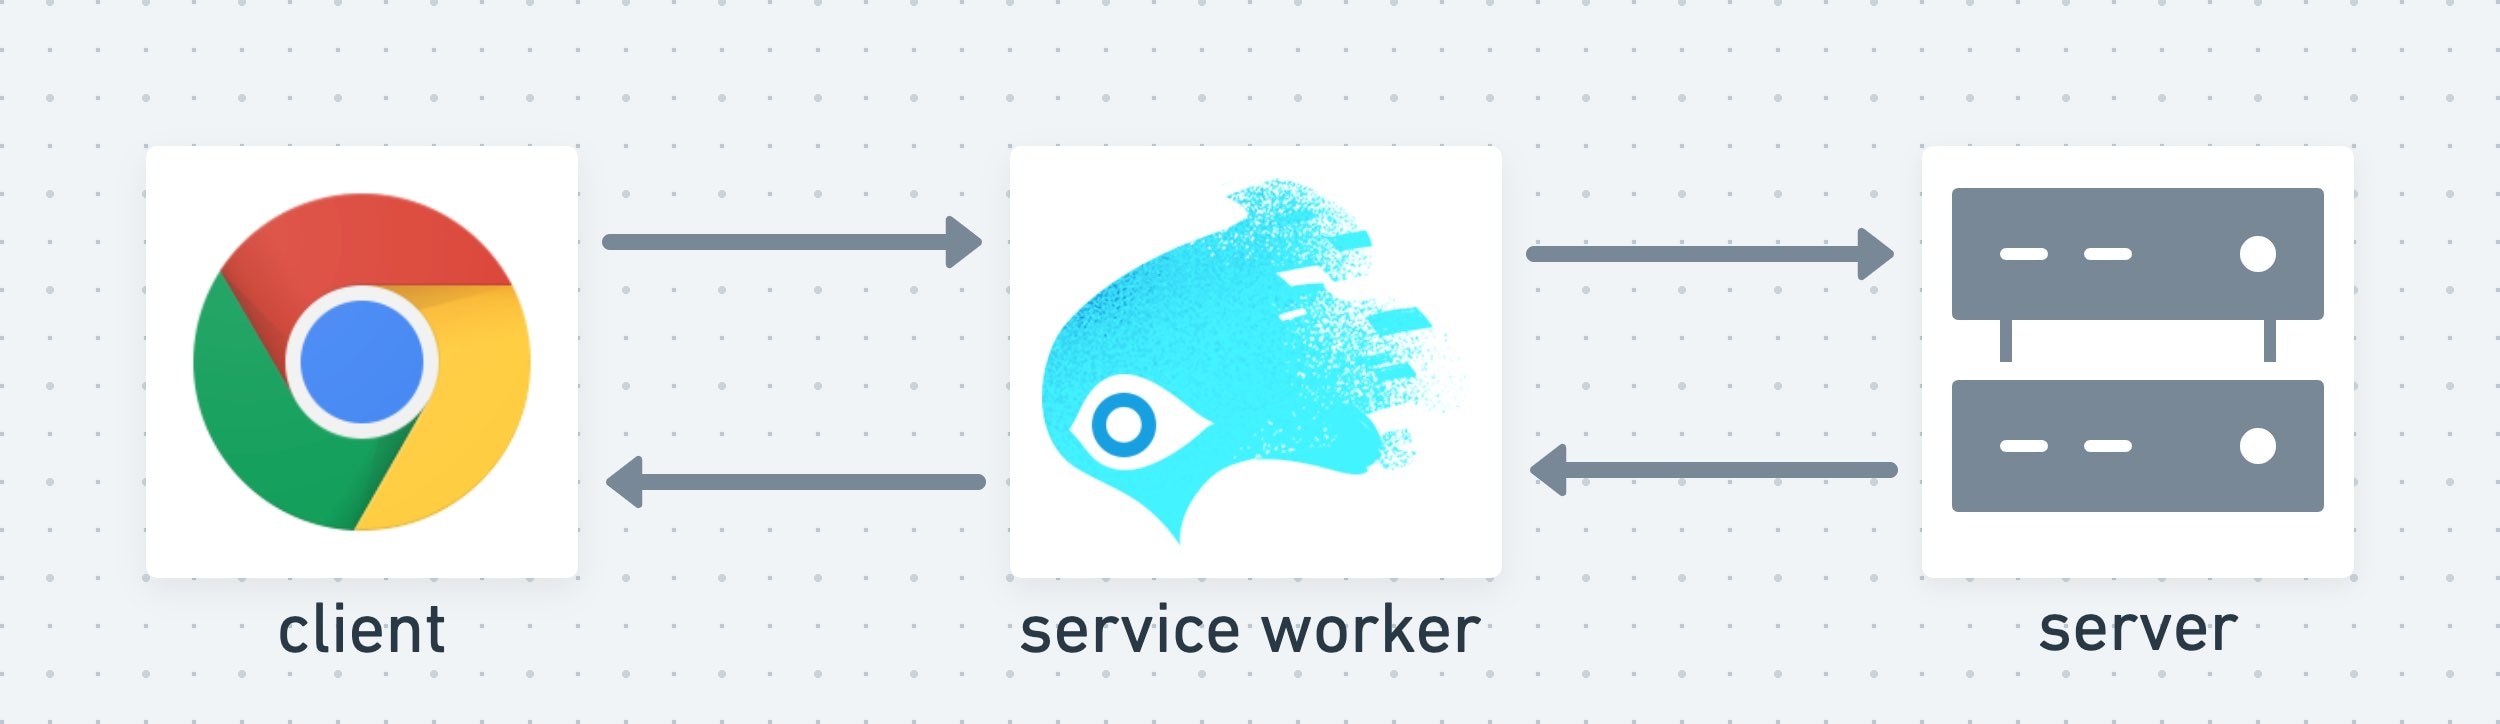 Service Worker はクライアントとサーバーの間の中間レイヤとして機能する